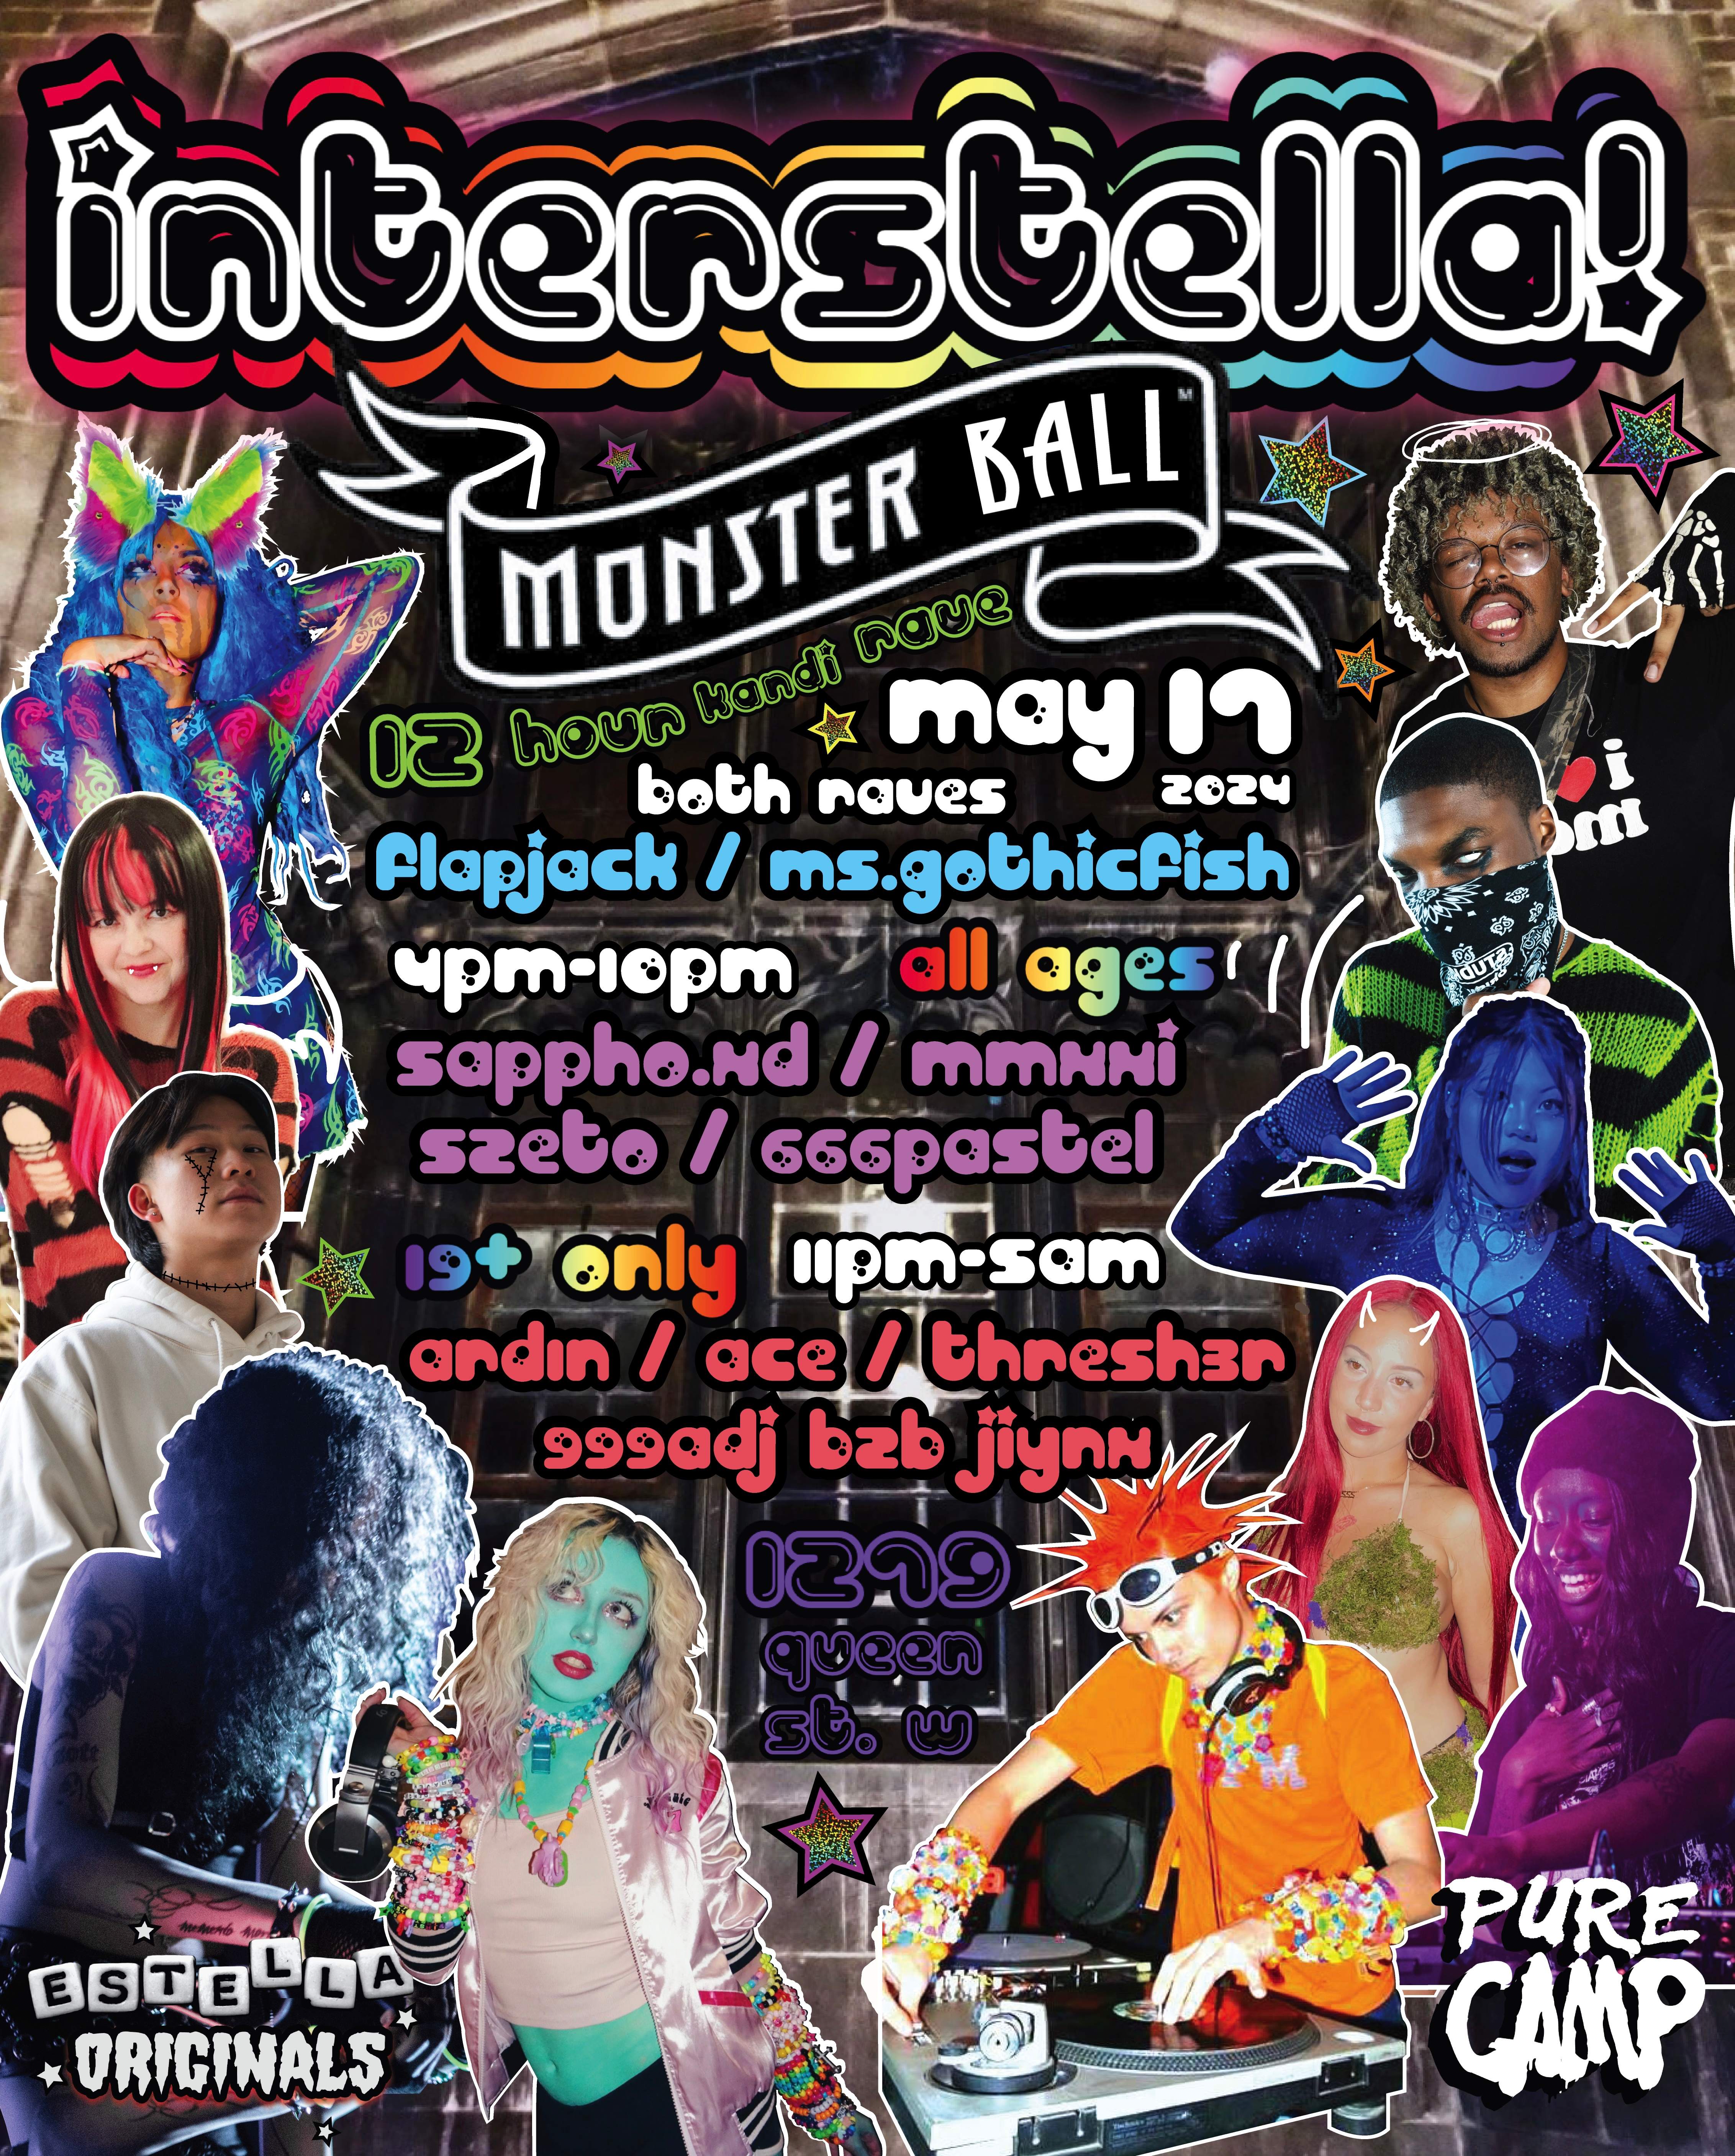 Interstella: Monster Ball / 12 Hour Rave - フライヤー裏